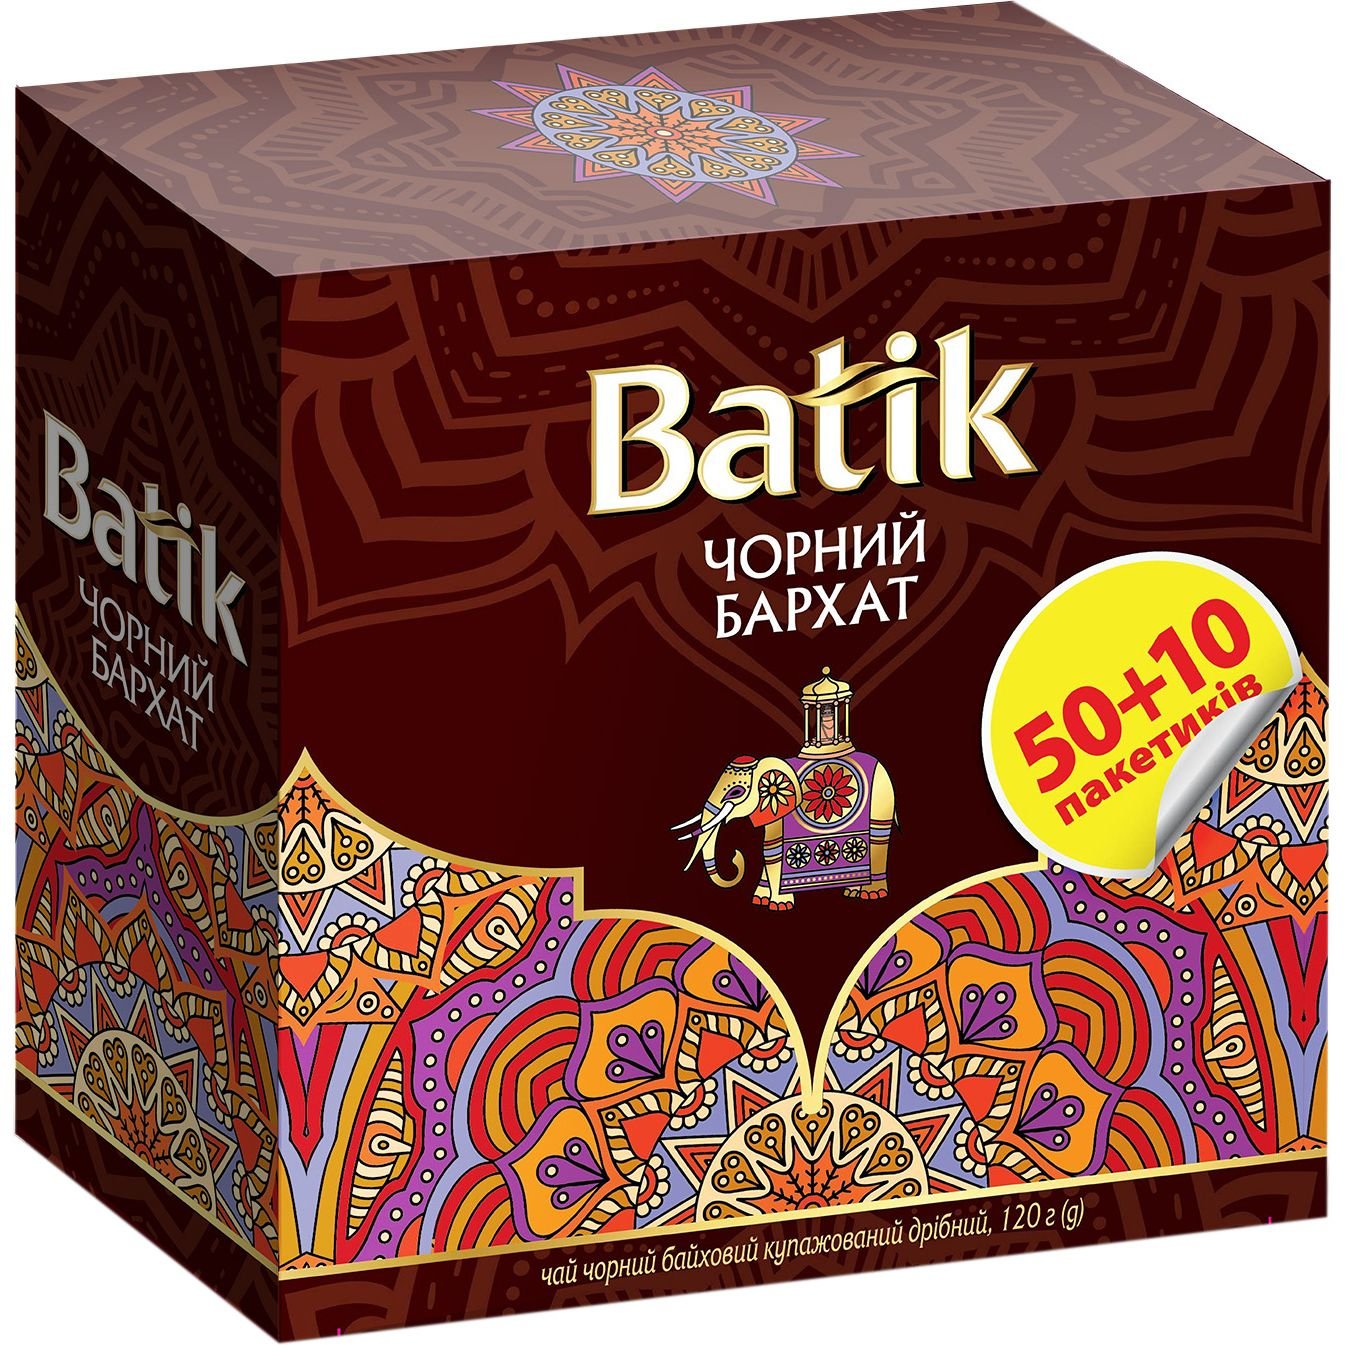 Чай черный Batik Черный бархат купажированный, мелкий, 50+10 шт. - фото 4